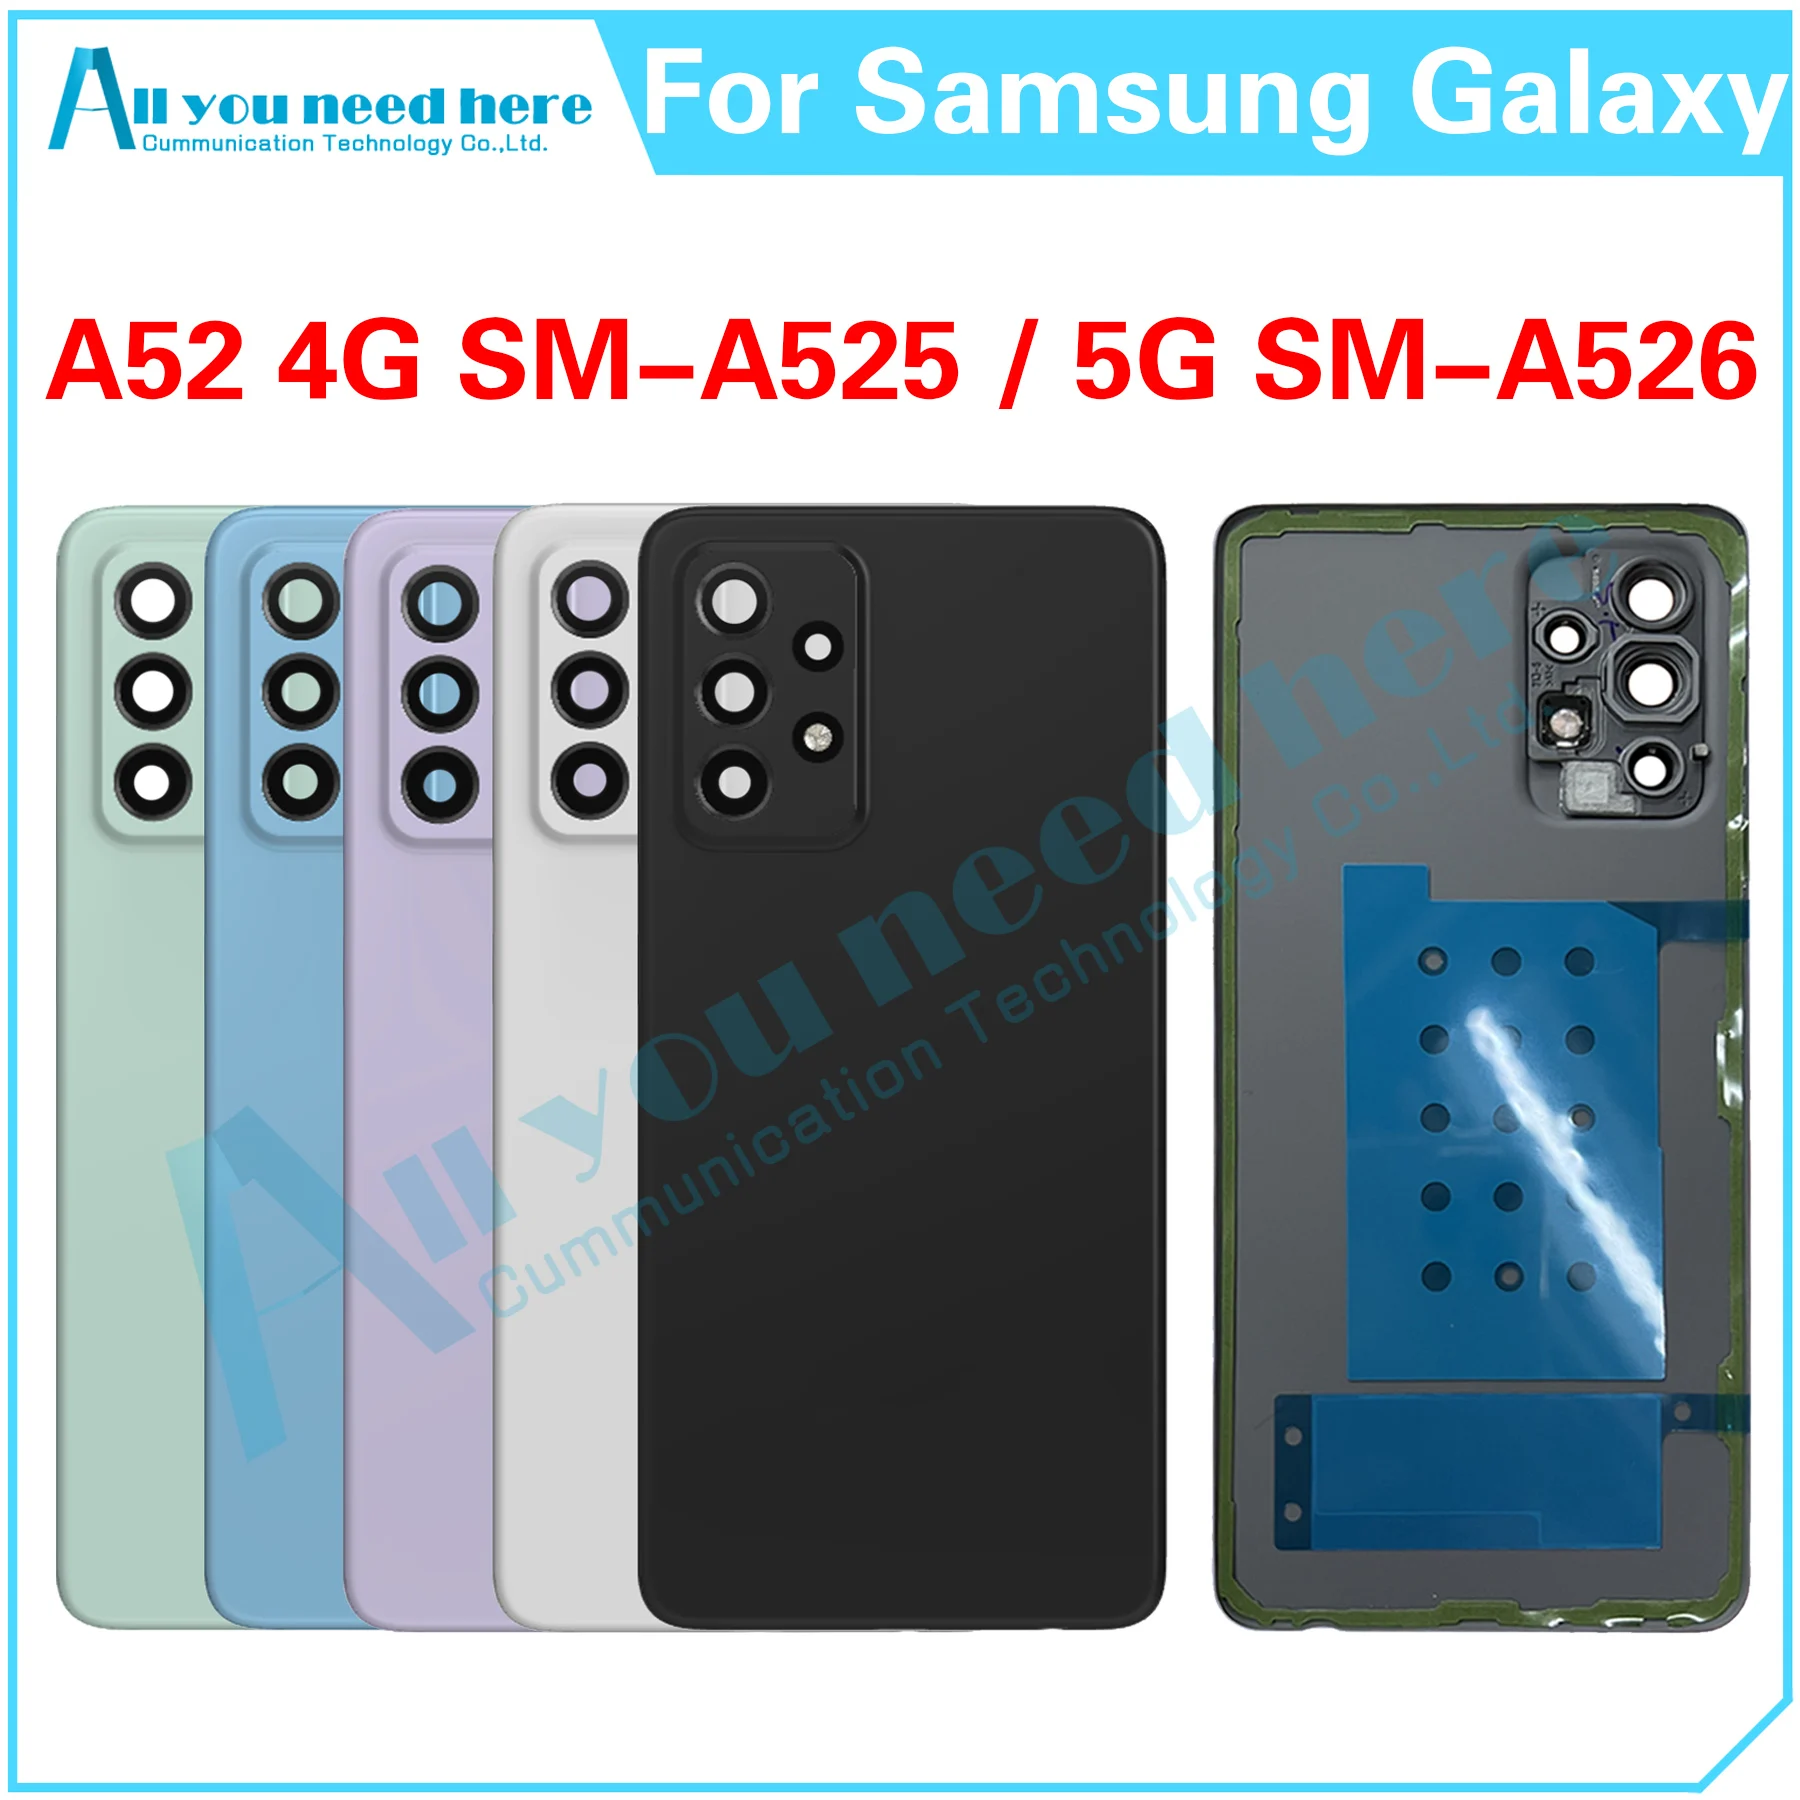 עבור Samsung Galaxy A52 4G 5G SM-A525 SM-A526 סוללת הטלפון בחזרה כיסוי אחורי מקרה כיסוי אחורי המכסה החלפת חלקים - 0